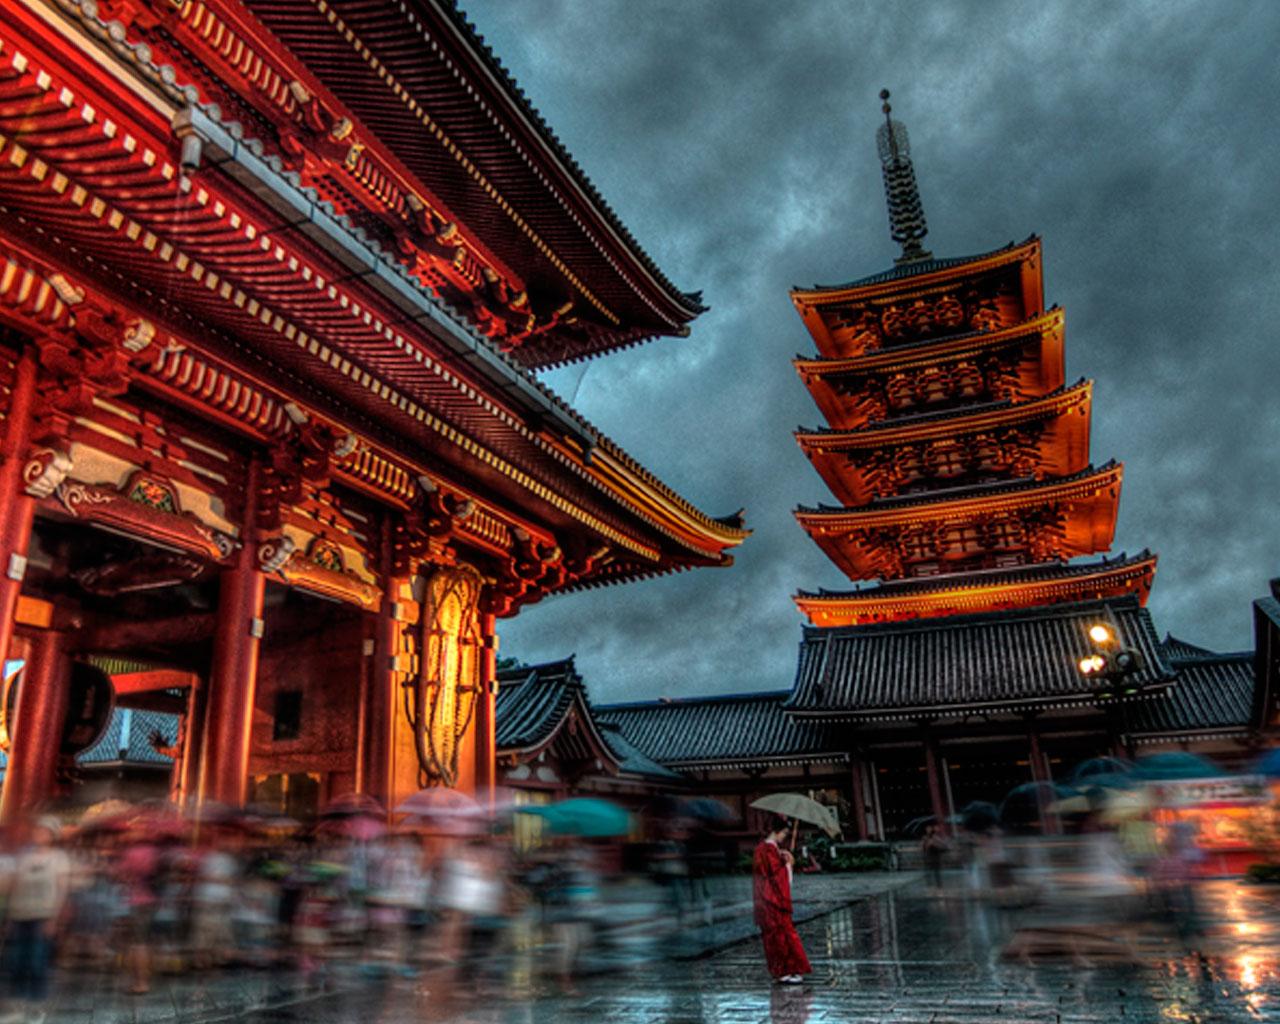 Arquitectura japonesa